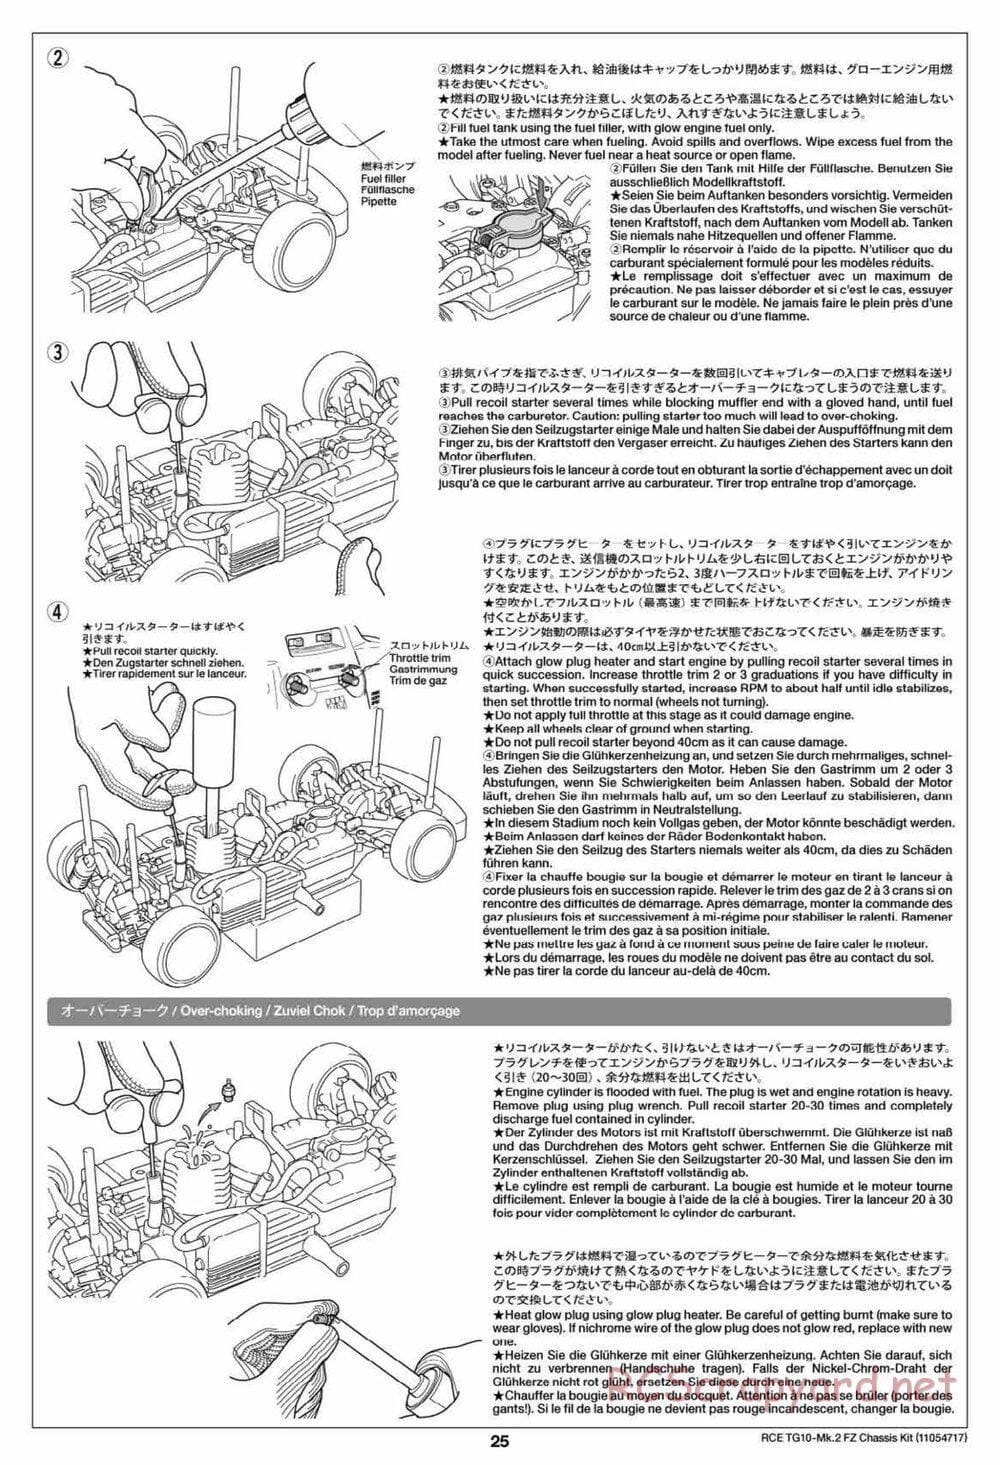 Tamiya - TG10 Mk.2 FZ Chassis - Manual - Page 25